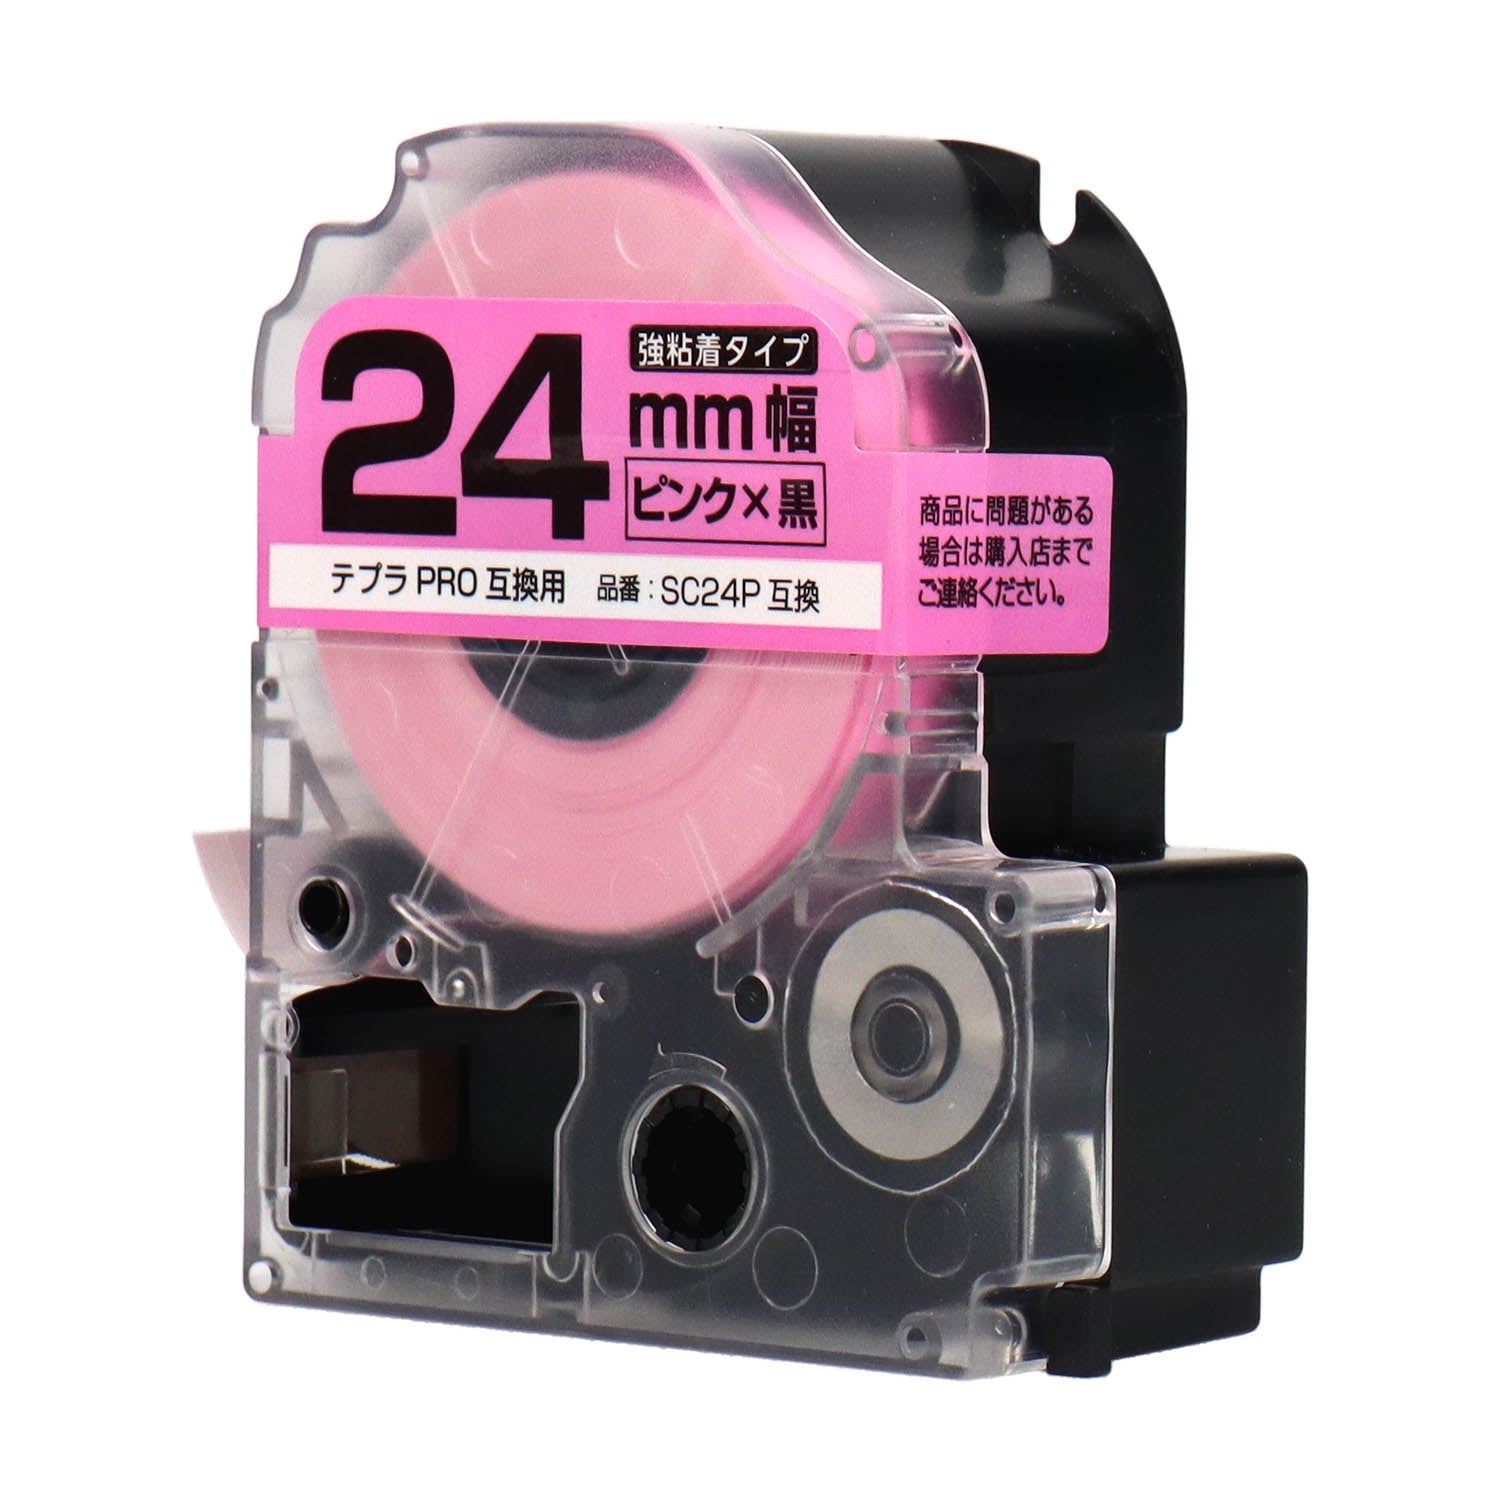 テプラPRO用互換テープカートリッジ ピンク×黒文字 24mm